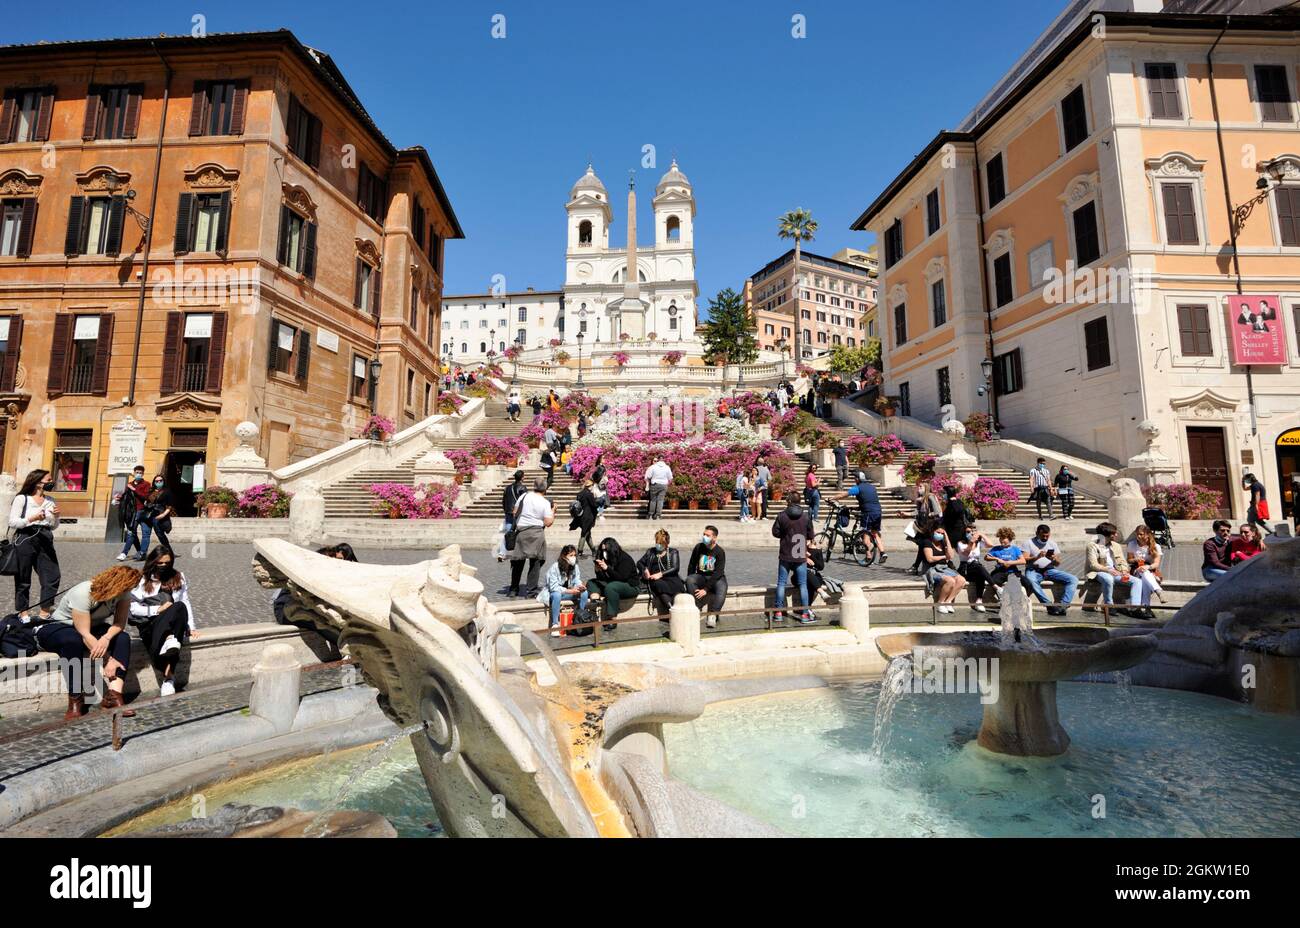 Italie, Rome, Piazza di Spagna, fontaine Barcacia et marches espagnoles Banque D'Images